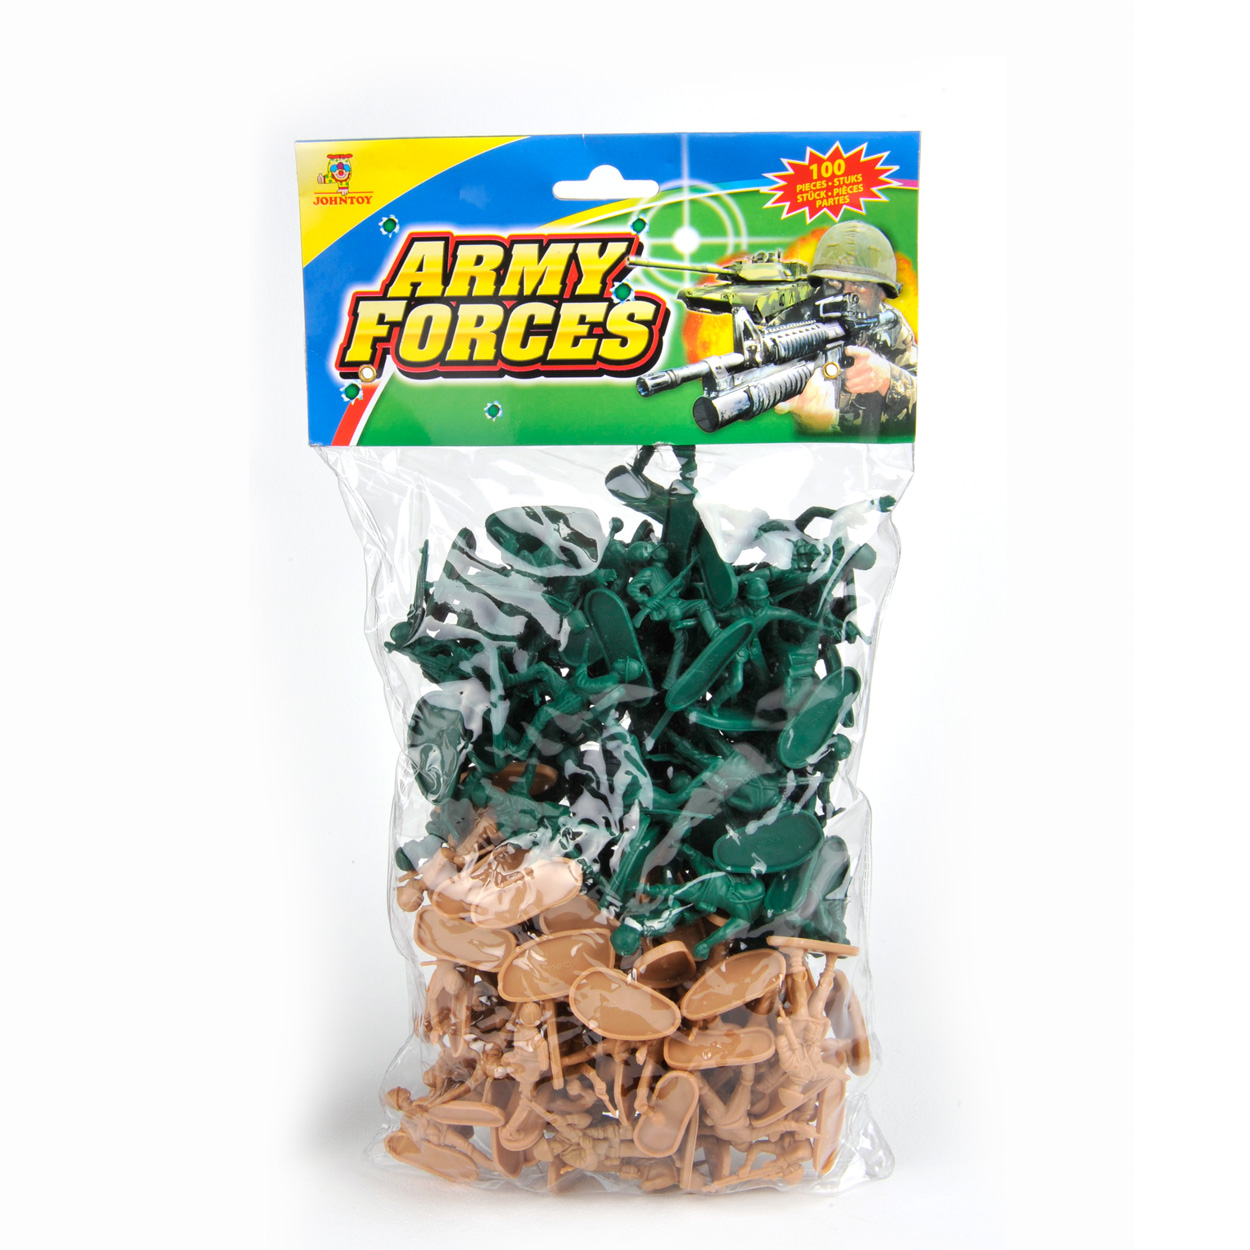 Buiten bout platform Soldiers in bag, 100pcs. | Thimble Toys